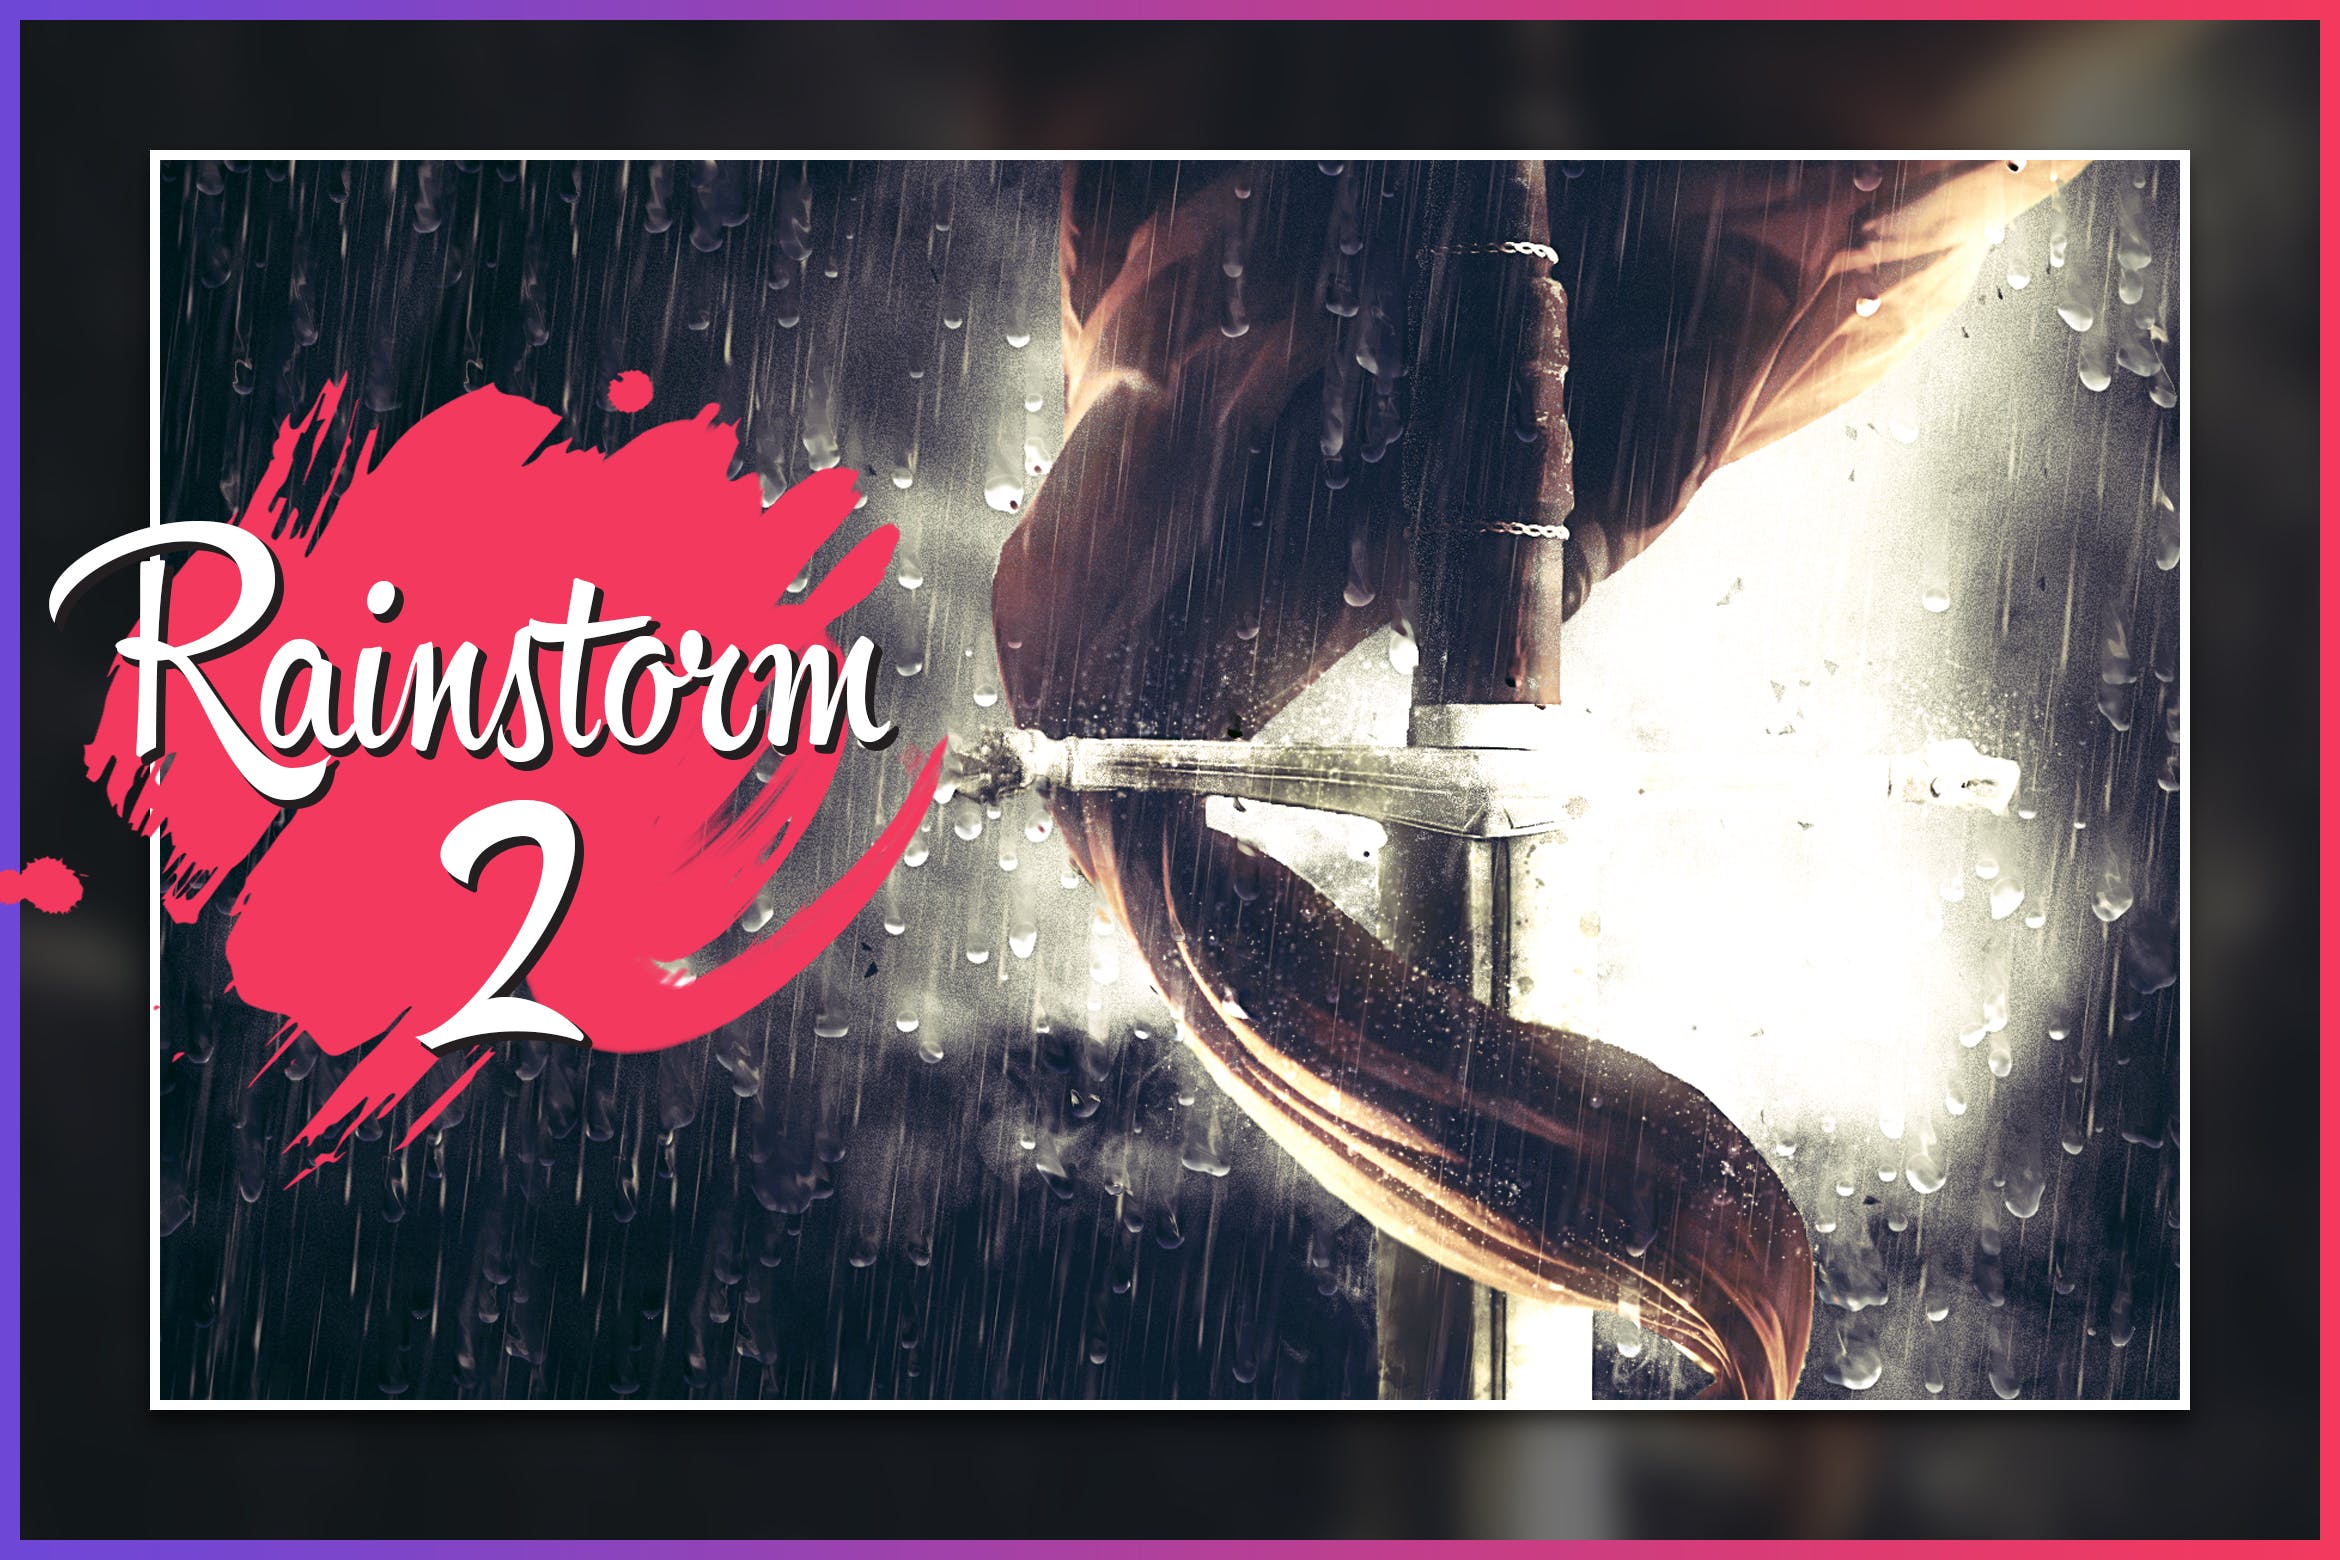 暴风雨照片背景特效亿图网易图库精选PS动作 Rainstorm 2 CS4+ Photoshop Action插图